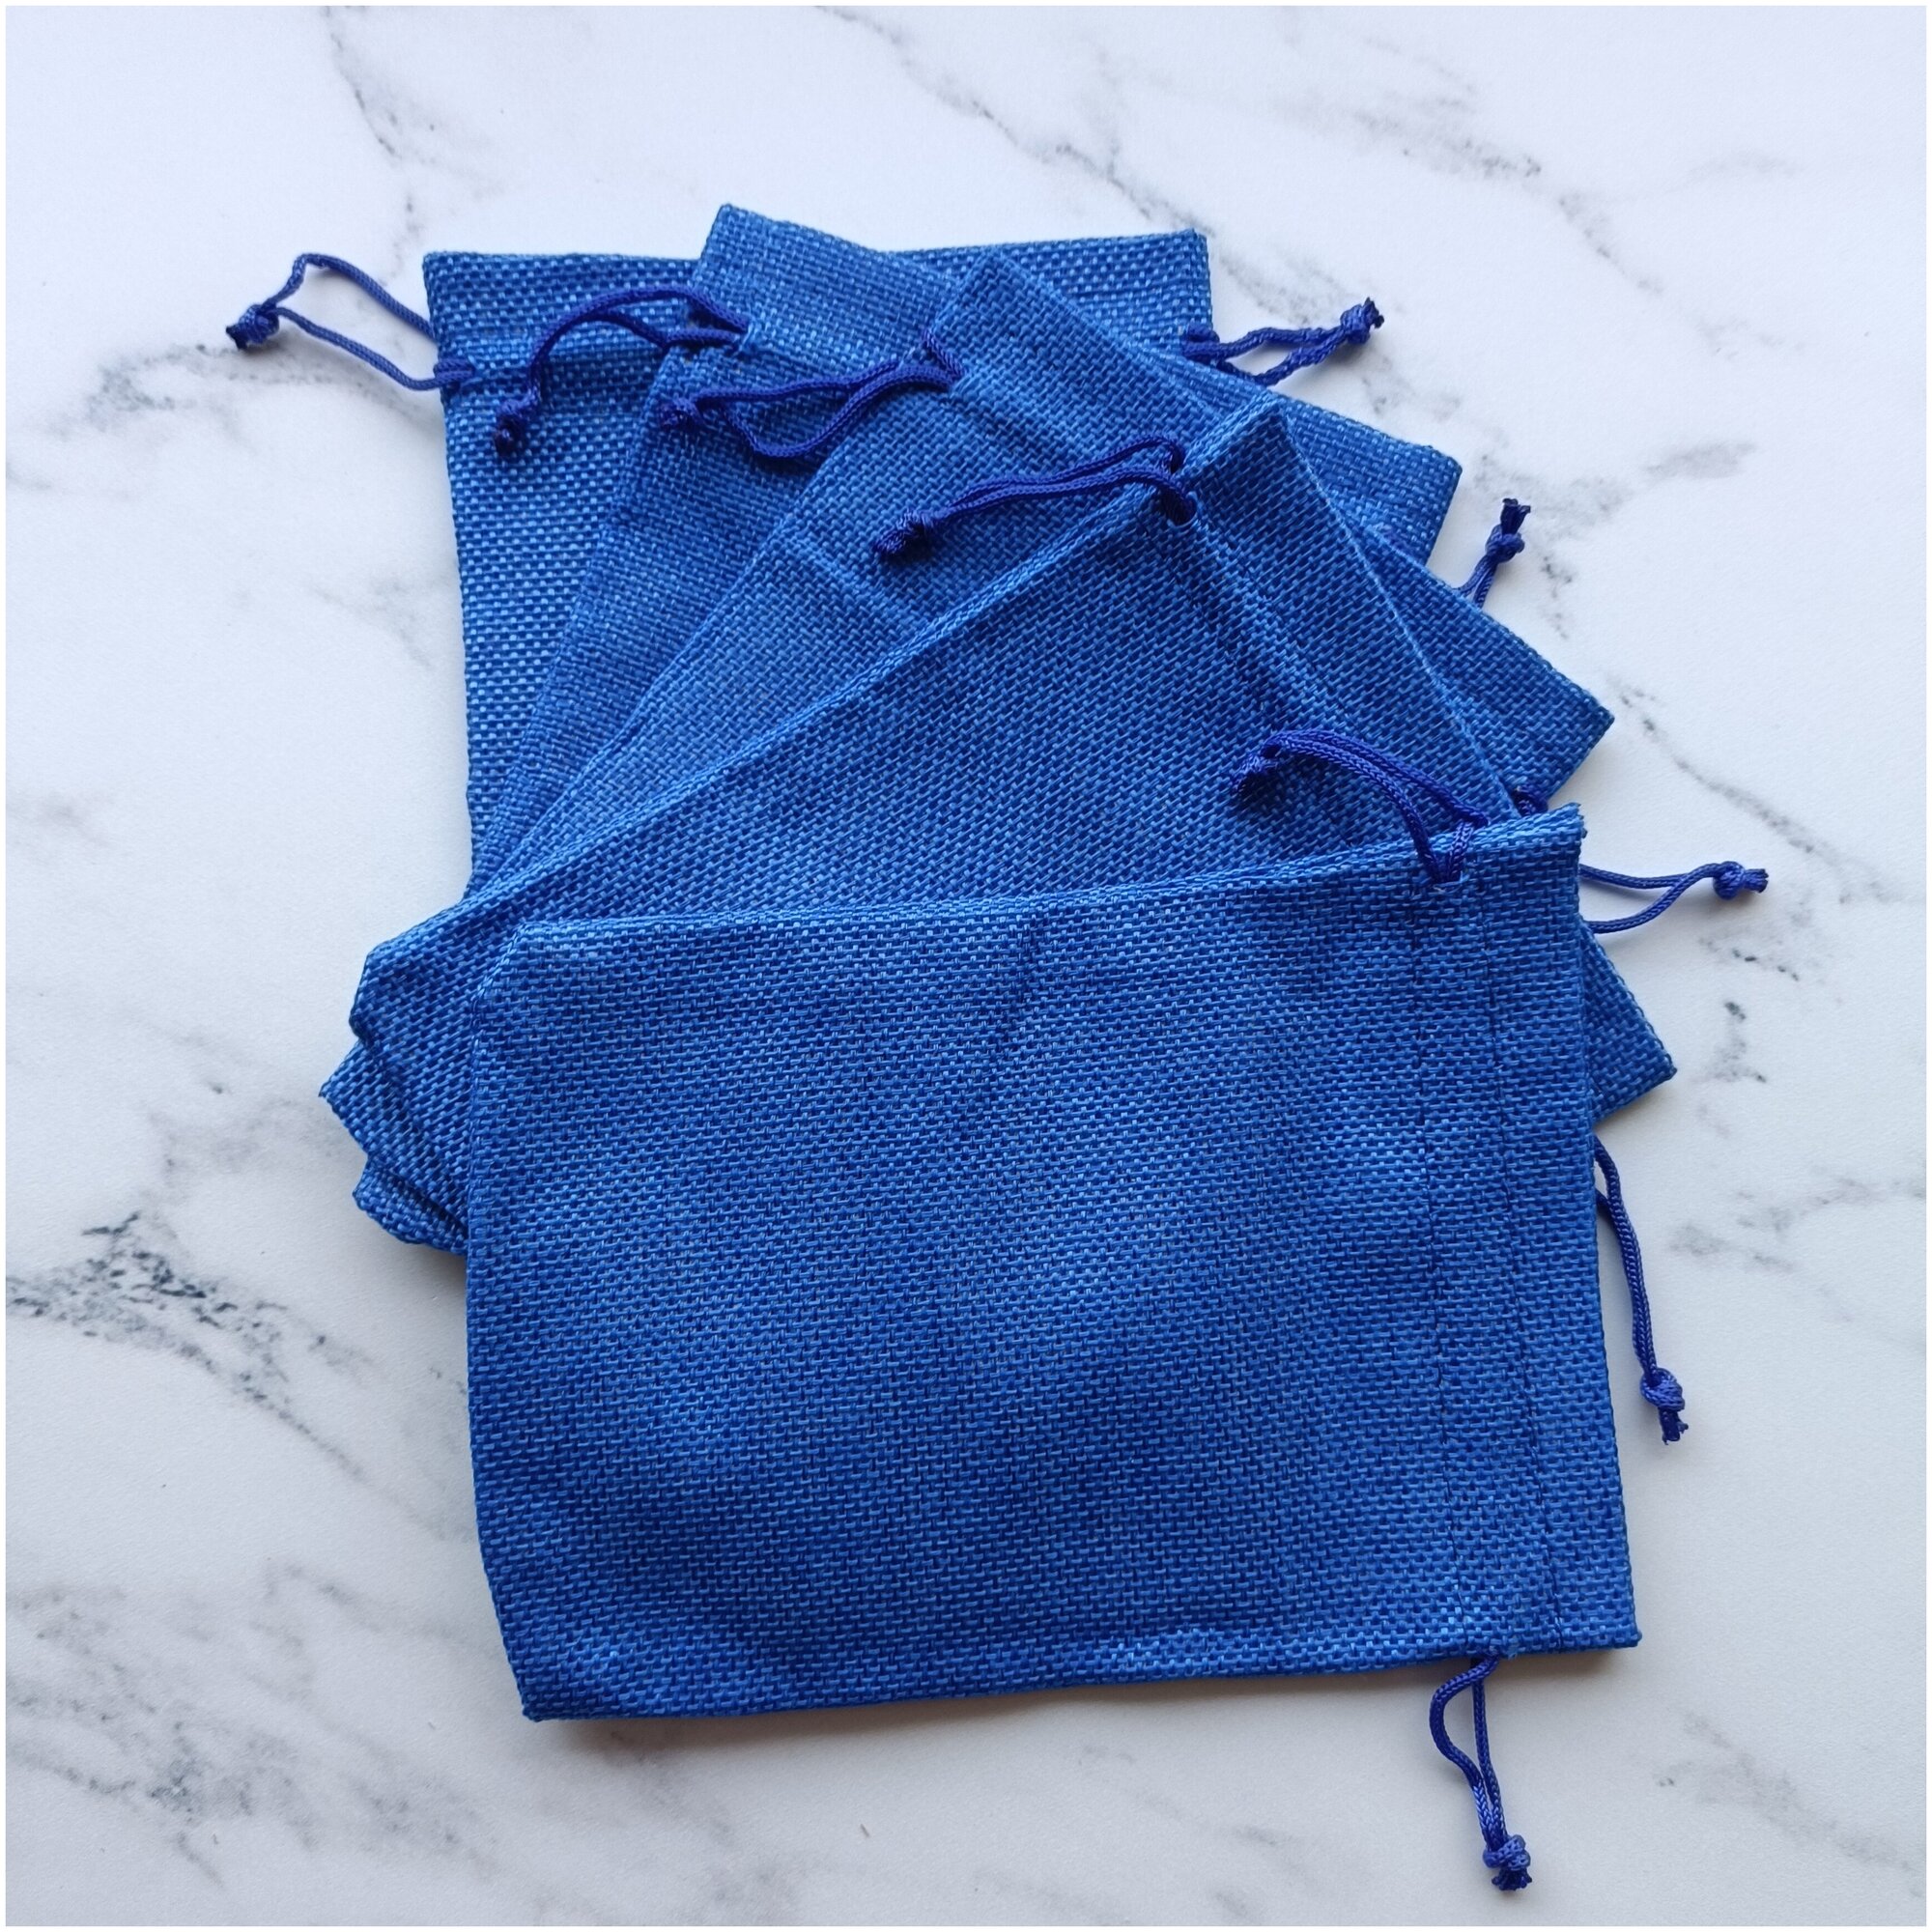 Холщовые мешочки синие 13х18 см. Набор из 5 шт.